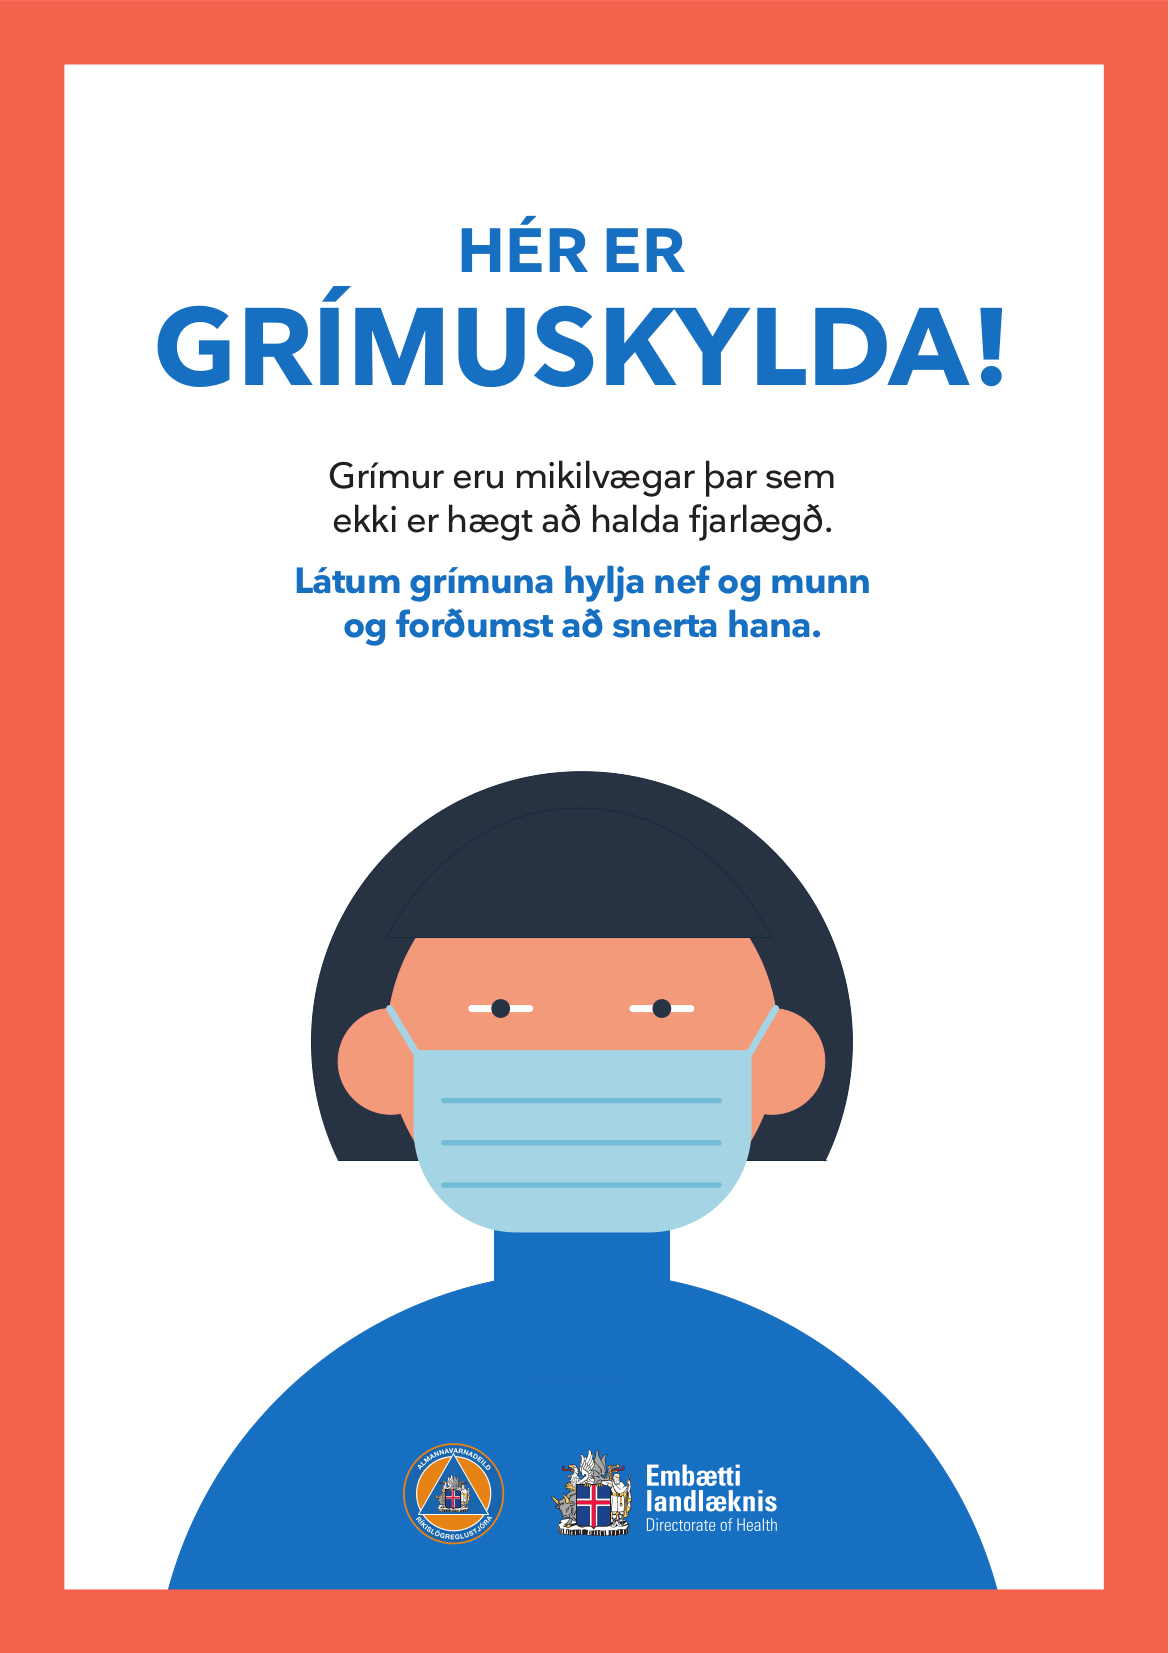 - plakat fyrir fyrirtæki - SVÞ - verslunar og